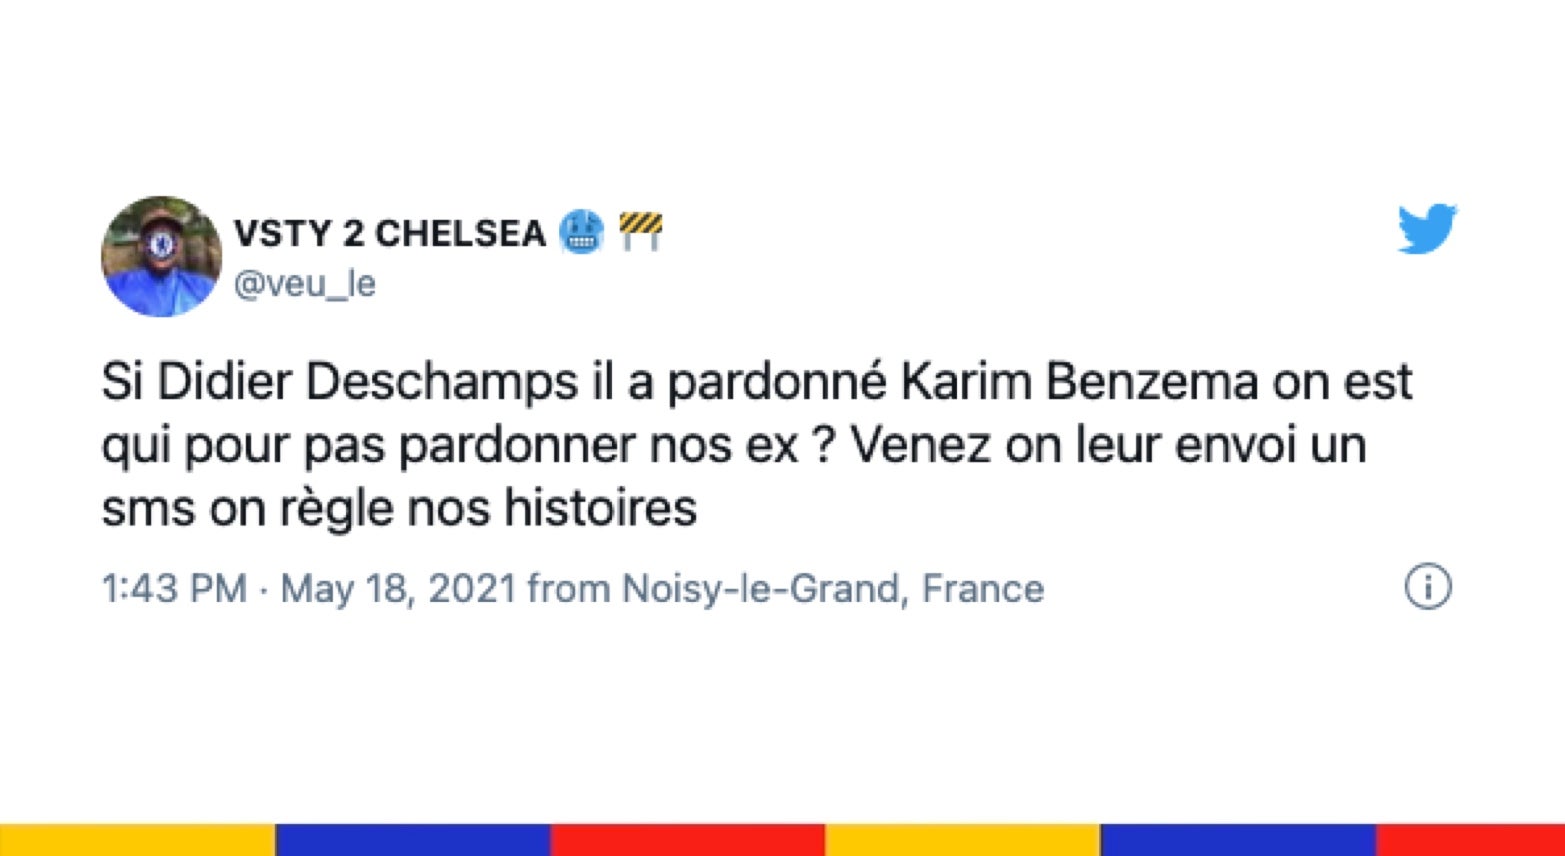 Le grand n’importe quoi des réseaux sociaux : retour de Karim Benzema chez les Bleus